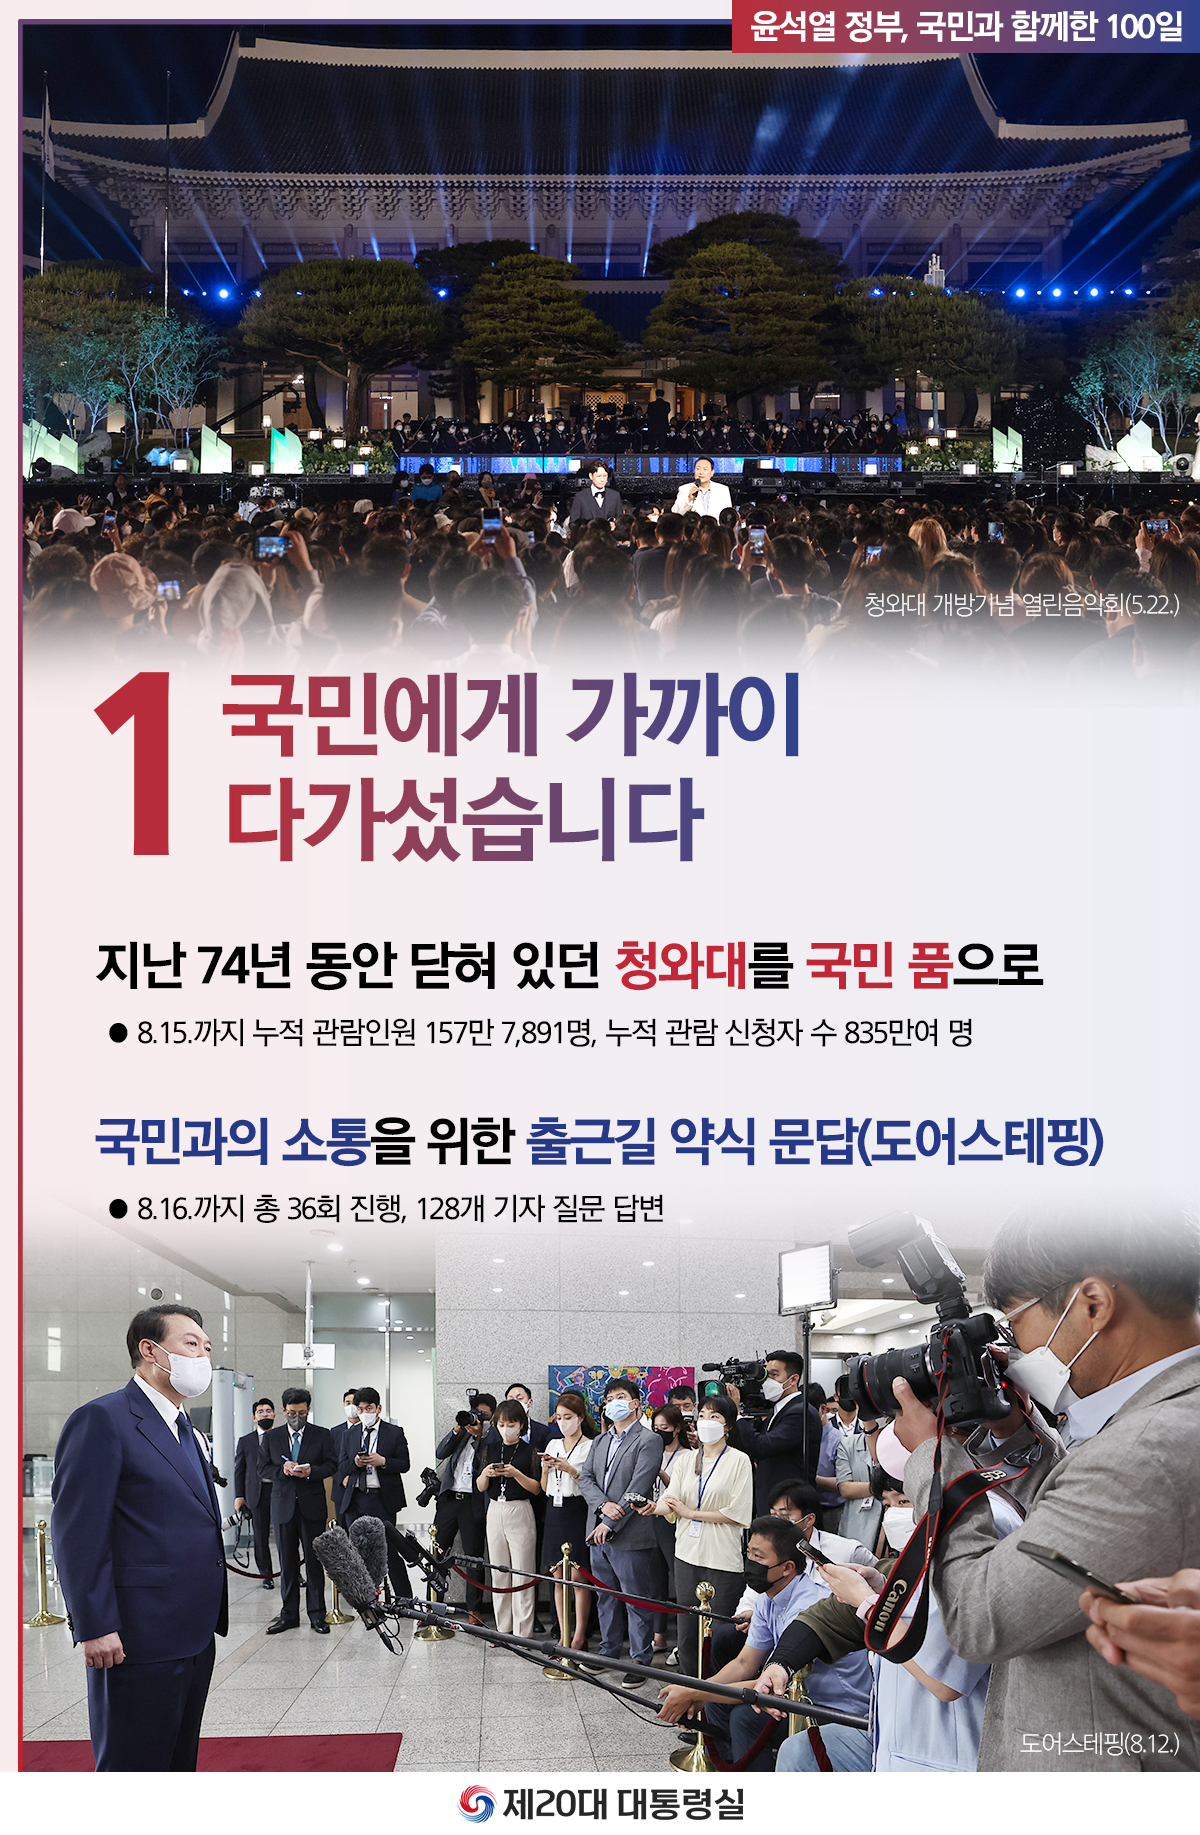 윤석열 정부의 100일, 국민과 함께한 시간들